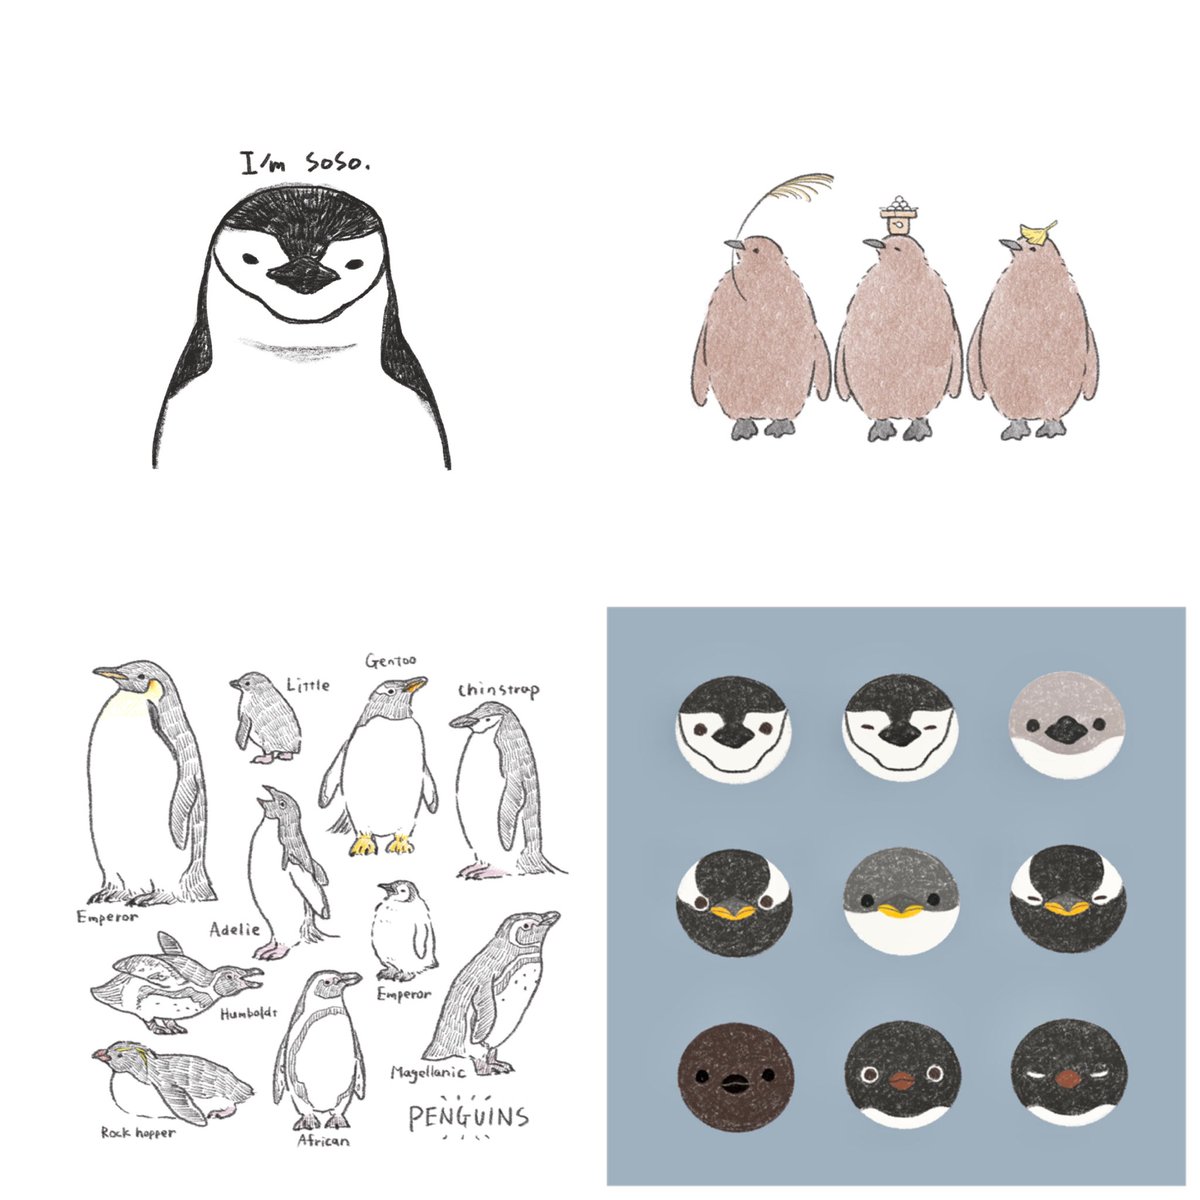 ペンギン描くの飽きないなあ🐧
#今月描いた絵を晒そう #ペンギン 